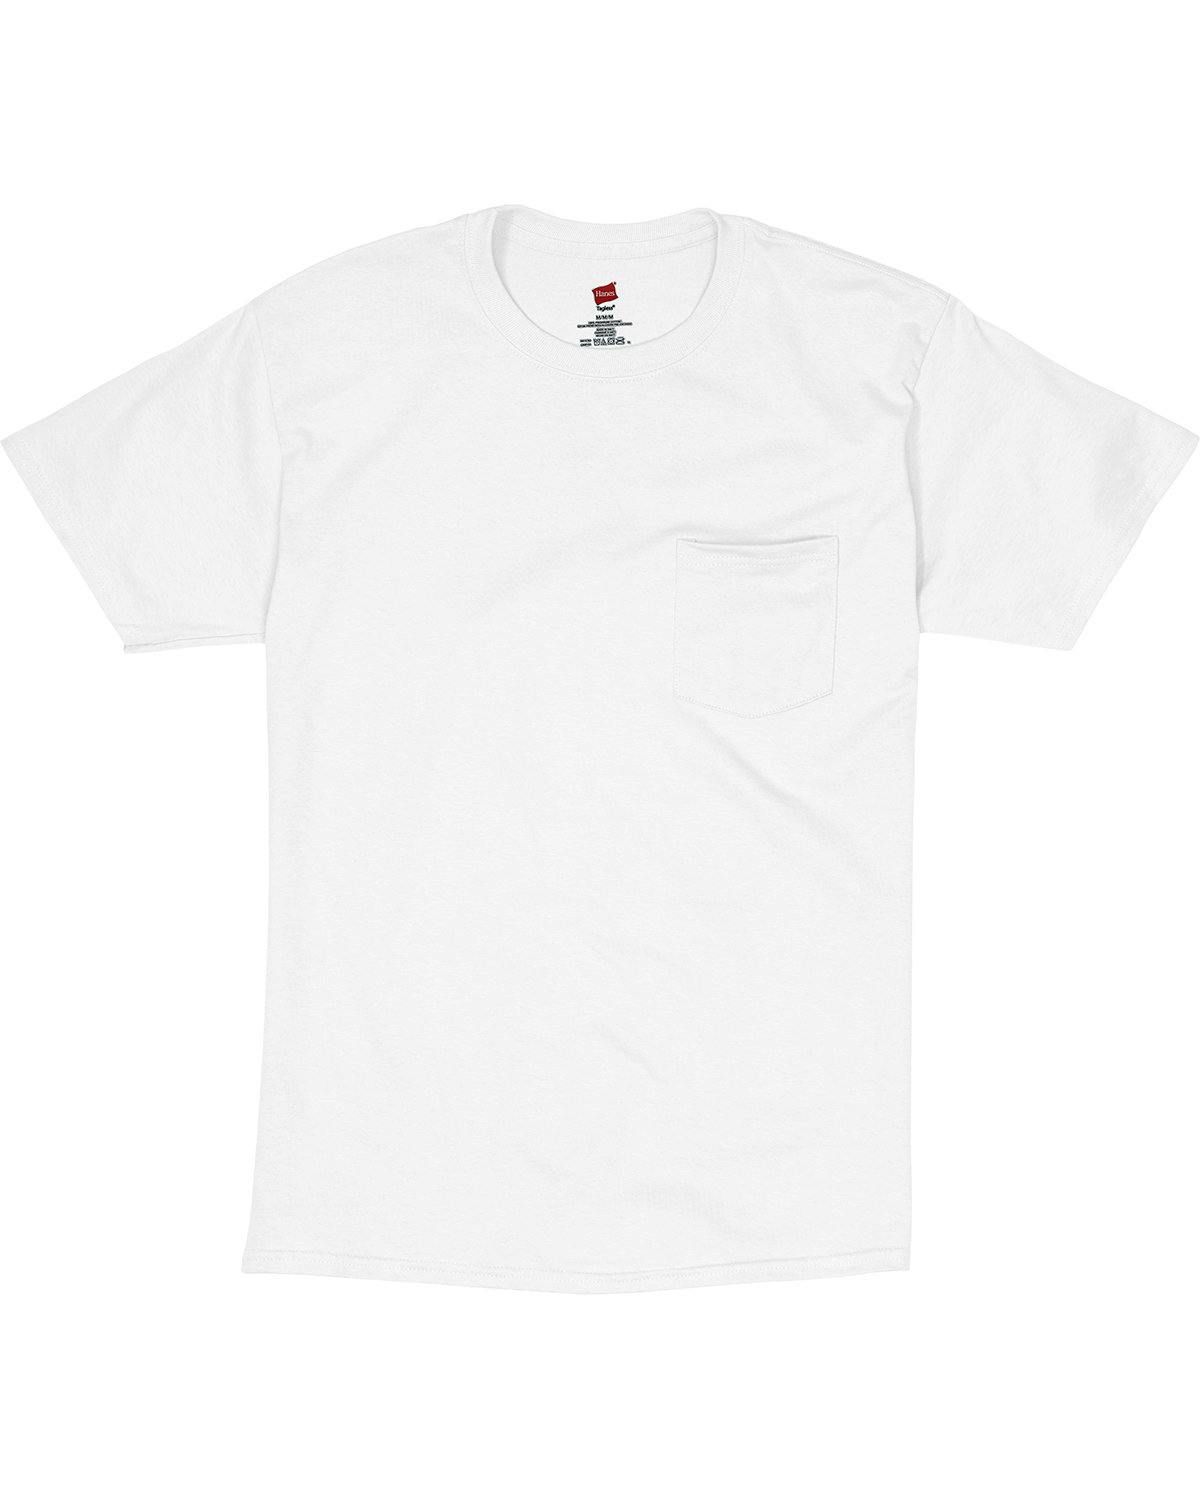 Image for Men's Authentic-T Pocket T-Shirt